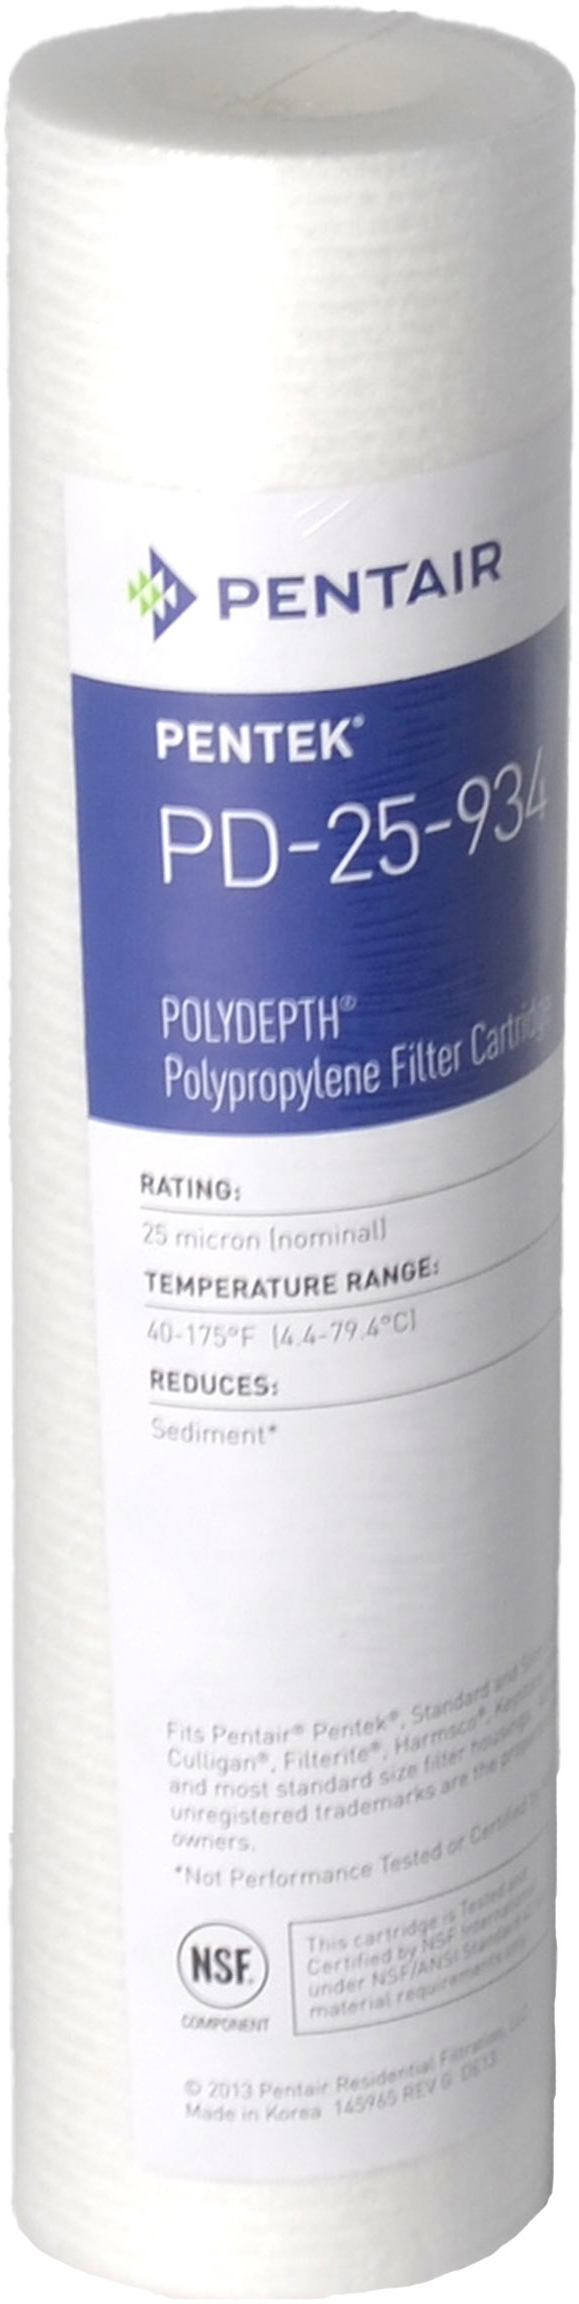 Характеристики картридж для фільтра Pentek PD-25-934 Polydepth (155751-43)